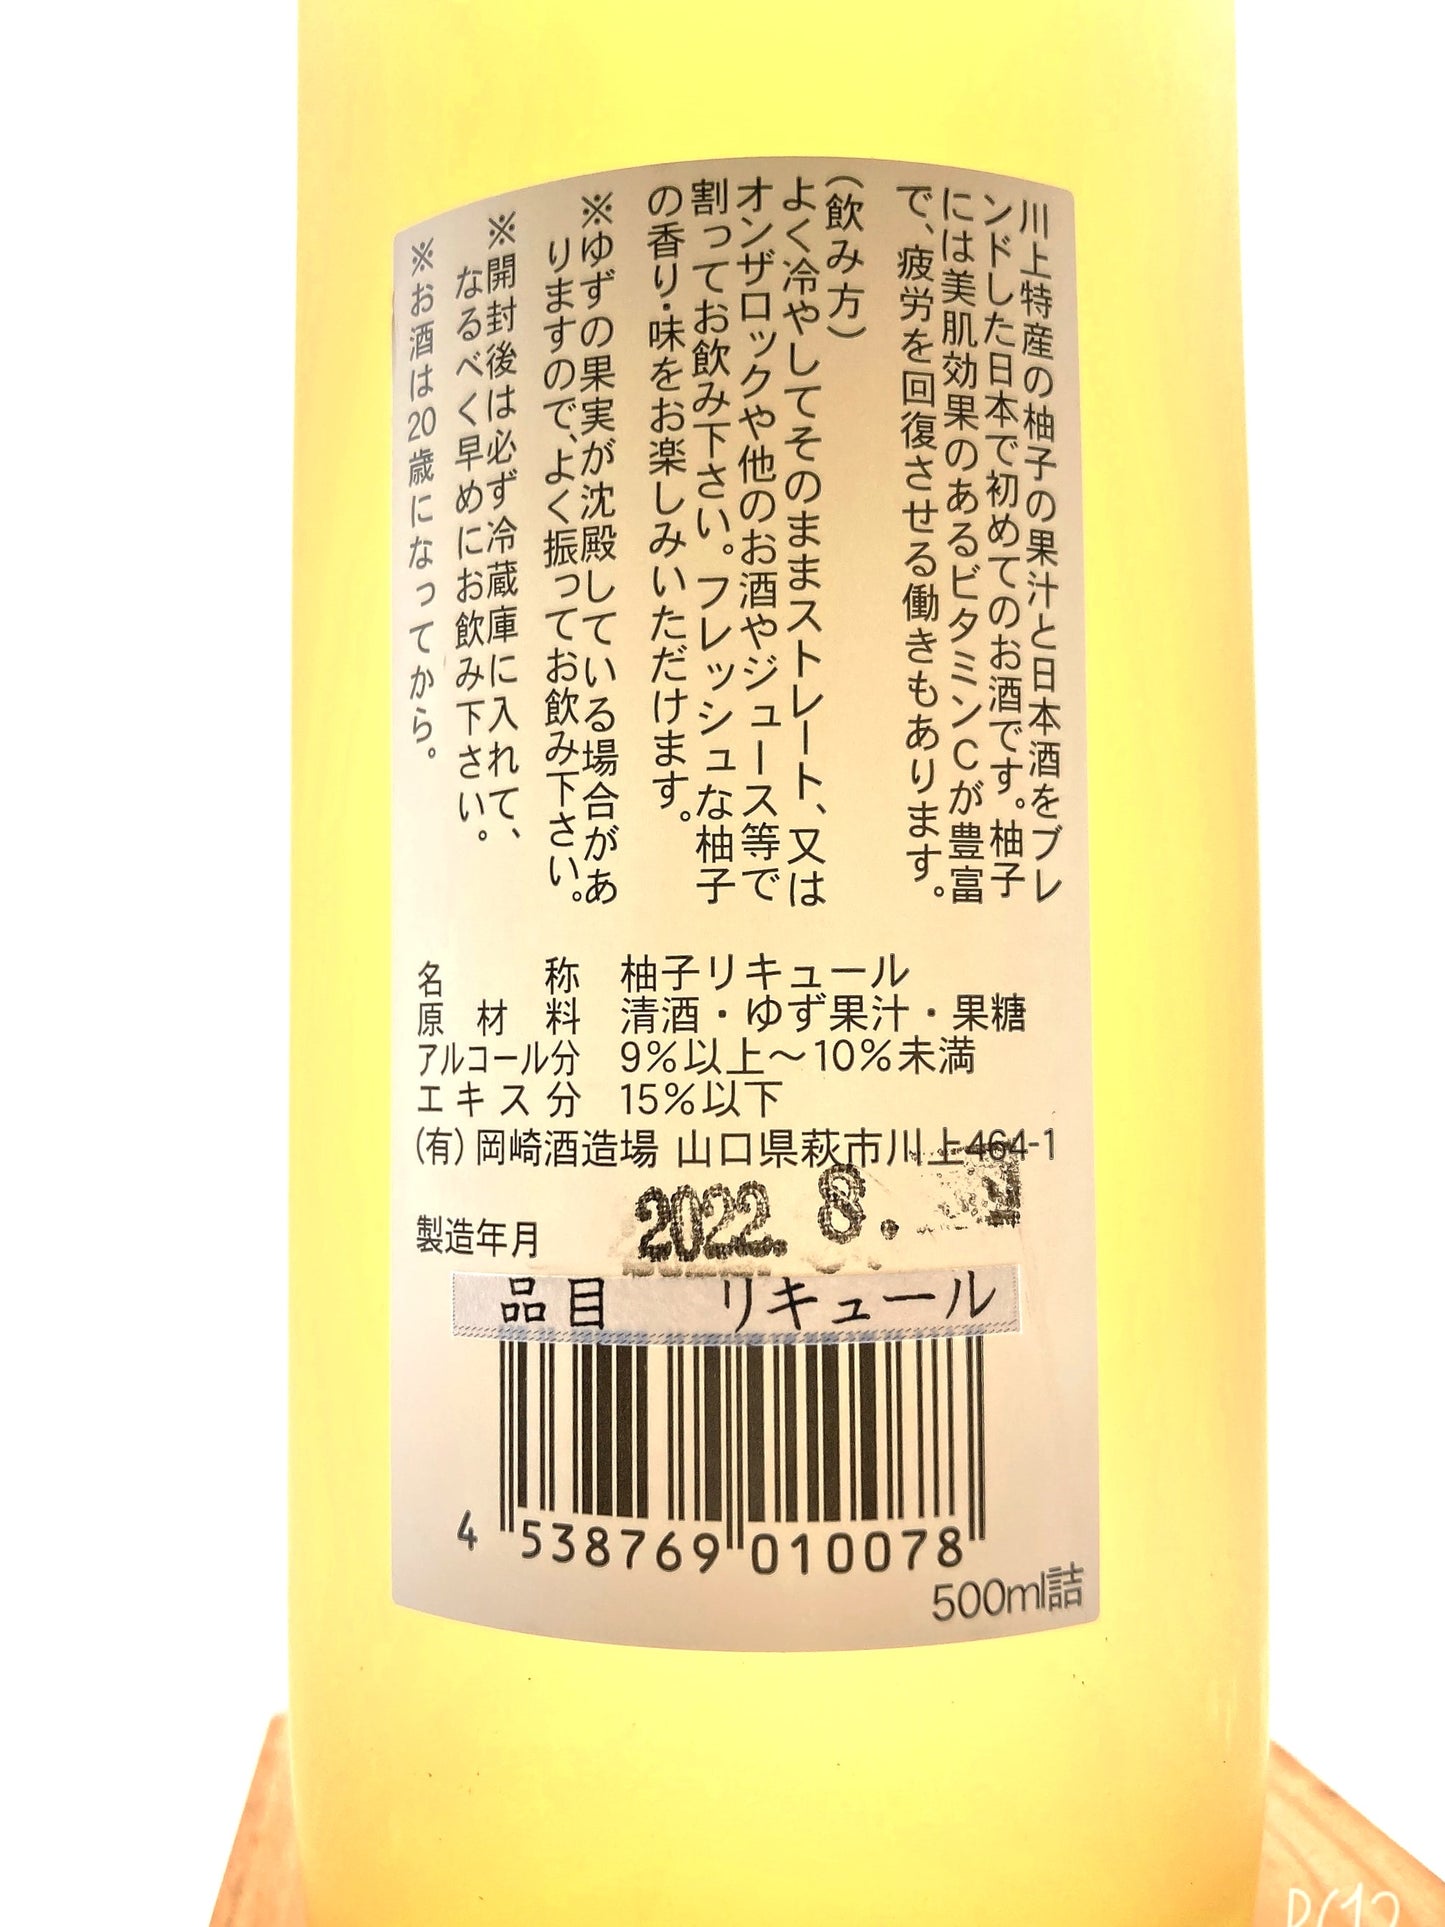 Yuzu sake 500ml